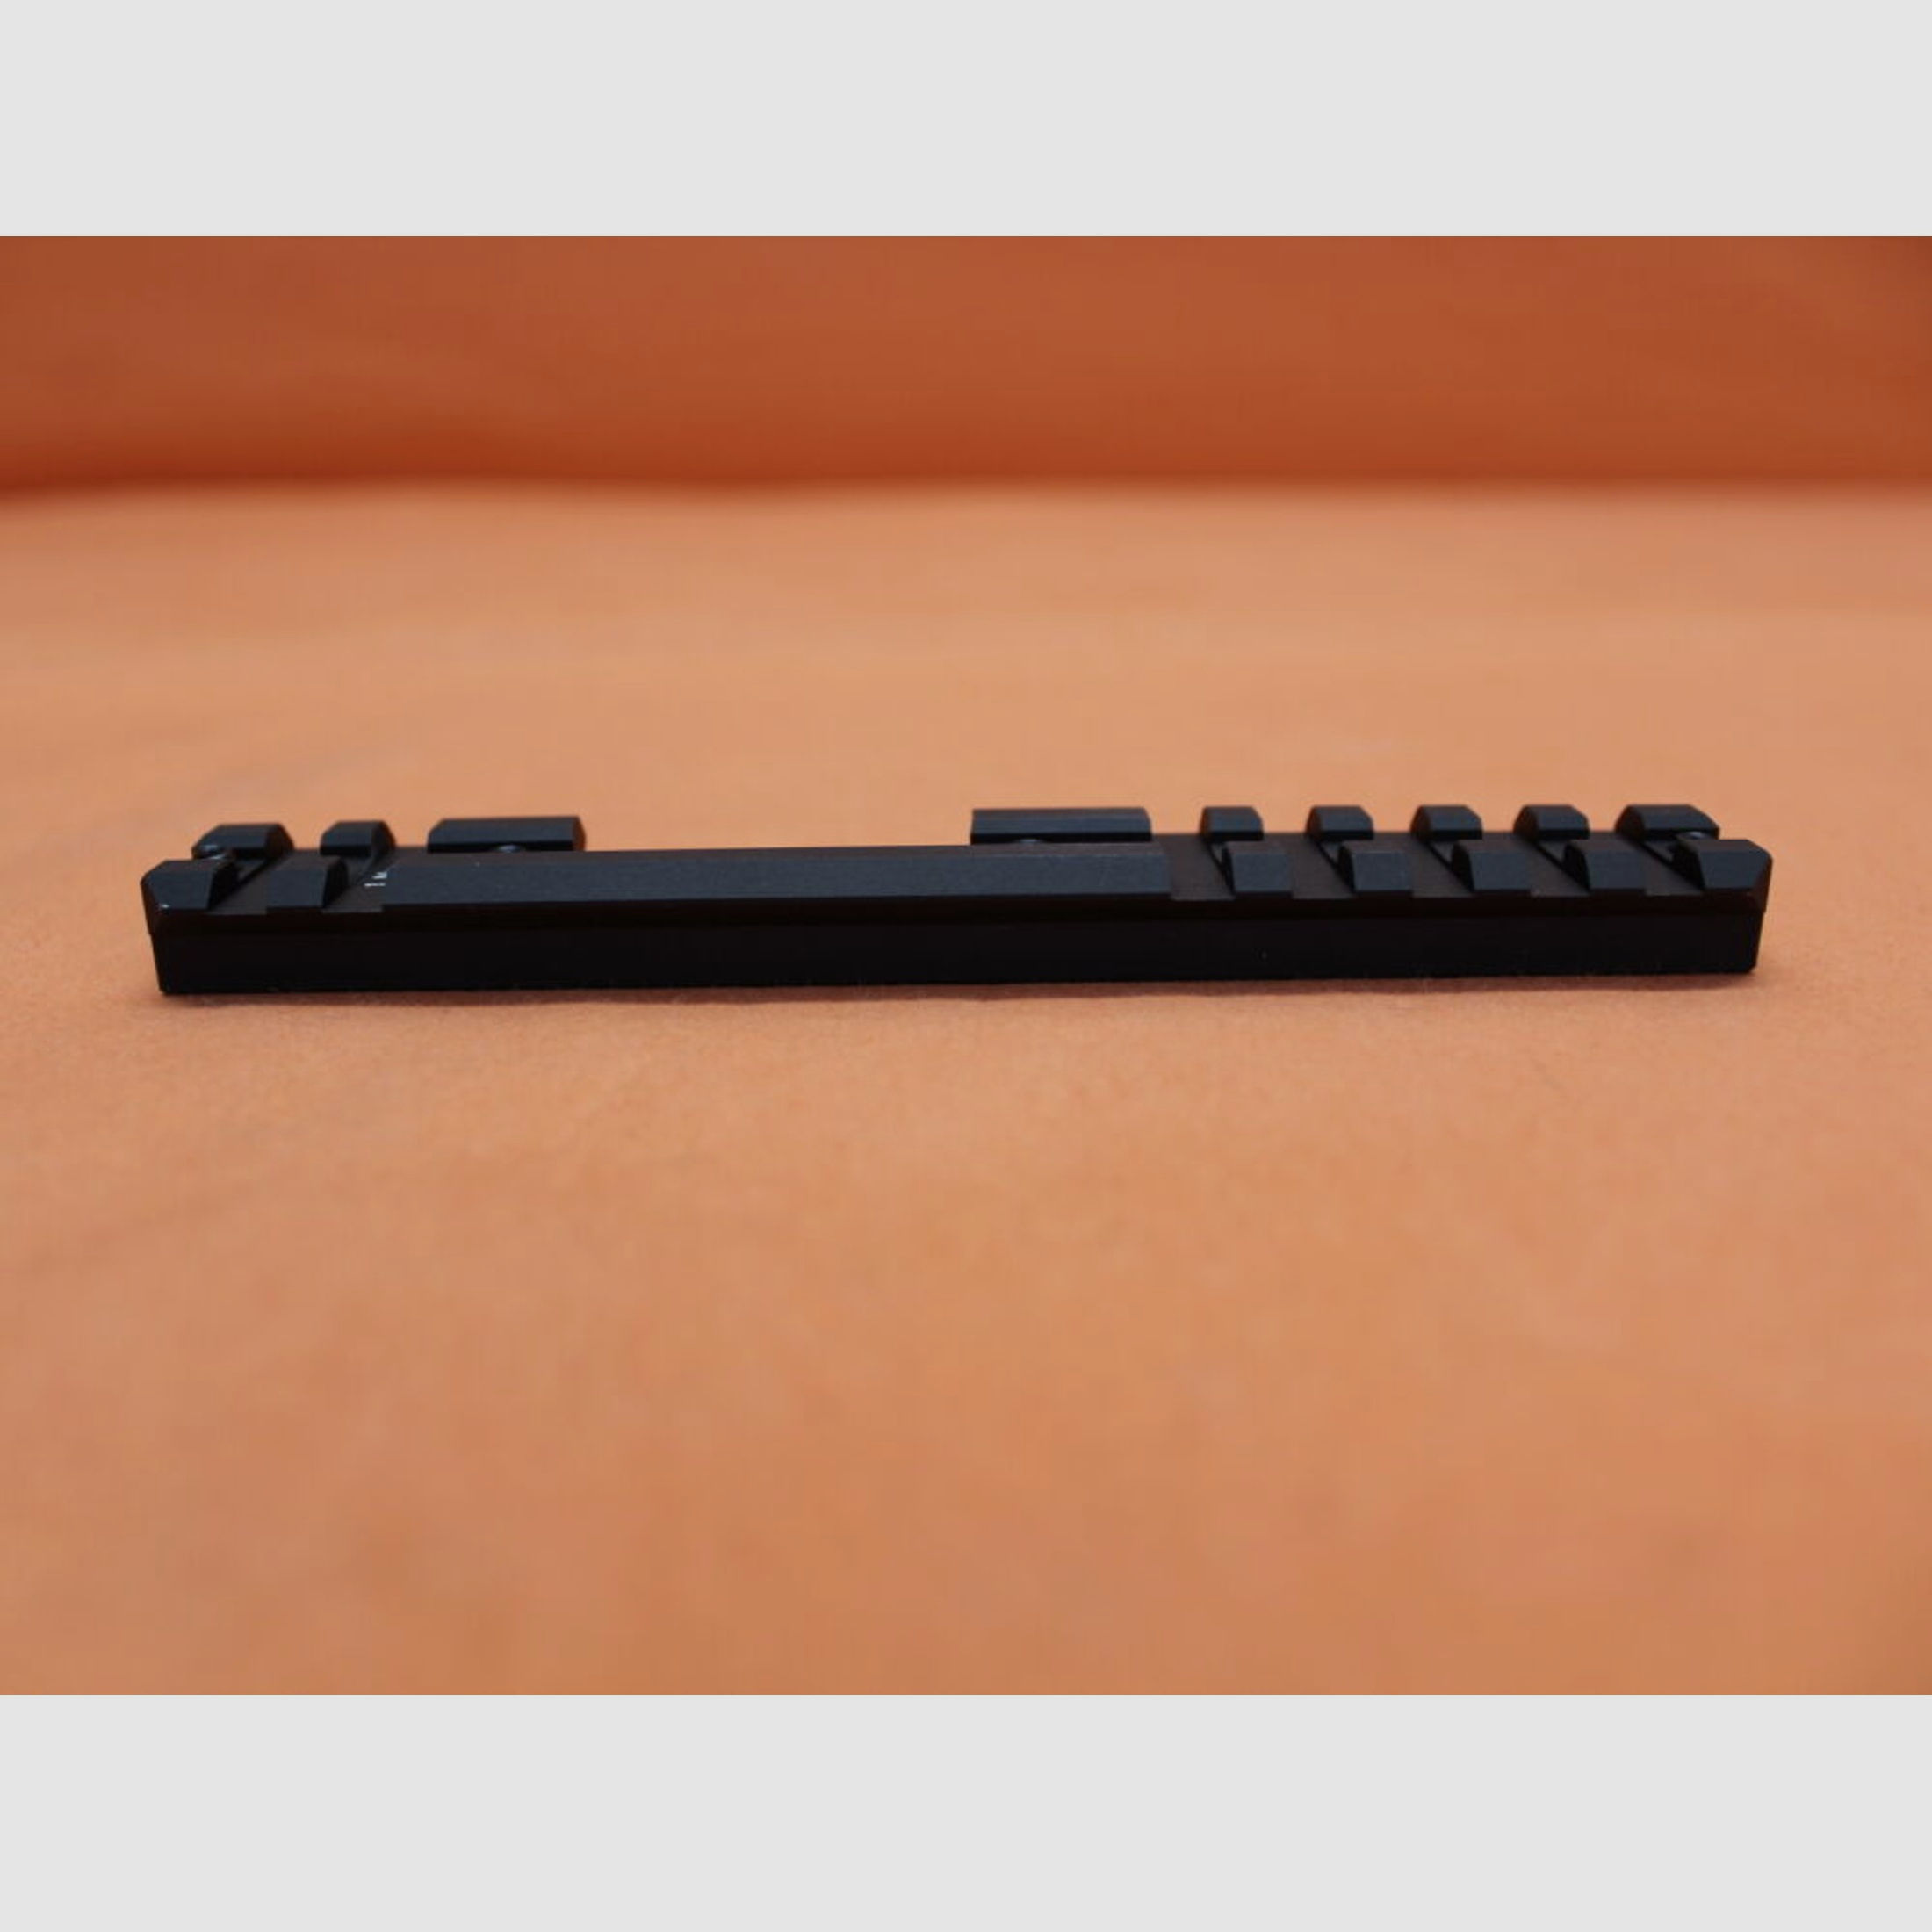 CZUB	 CZUB CZ 457: Weaver-/ Picatinnyprofil-Montageschiene BL=140mm Alu schwarz BH=11,4mm